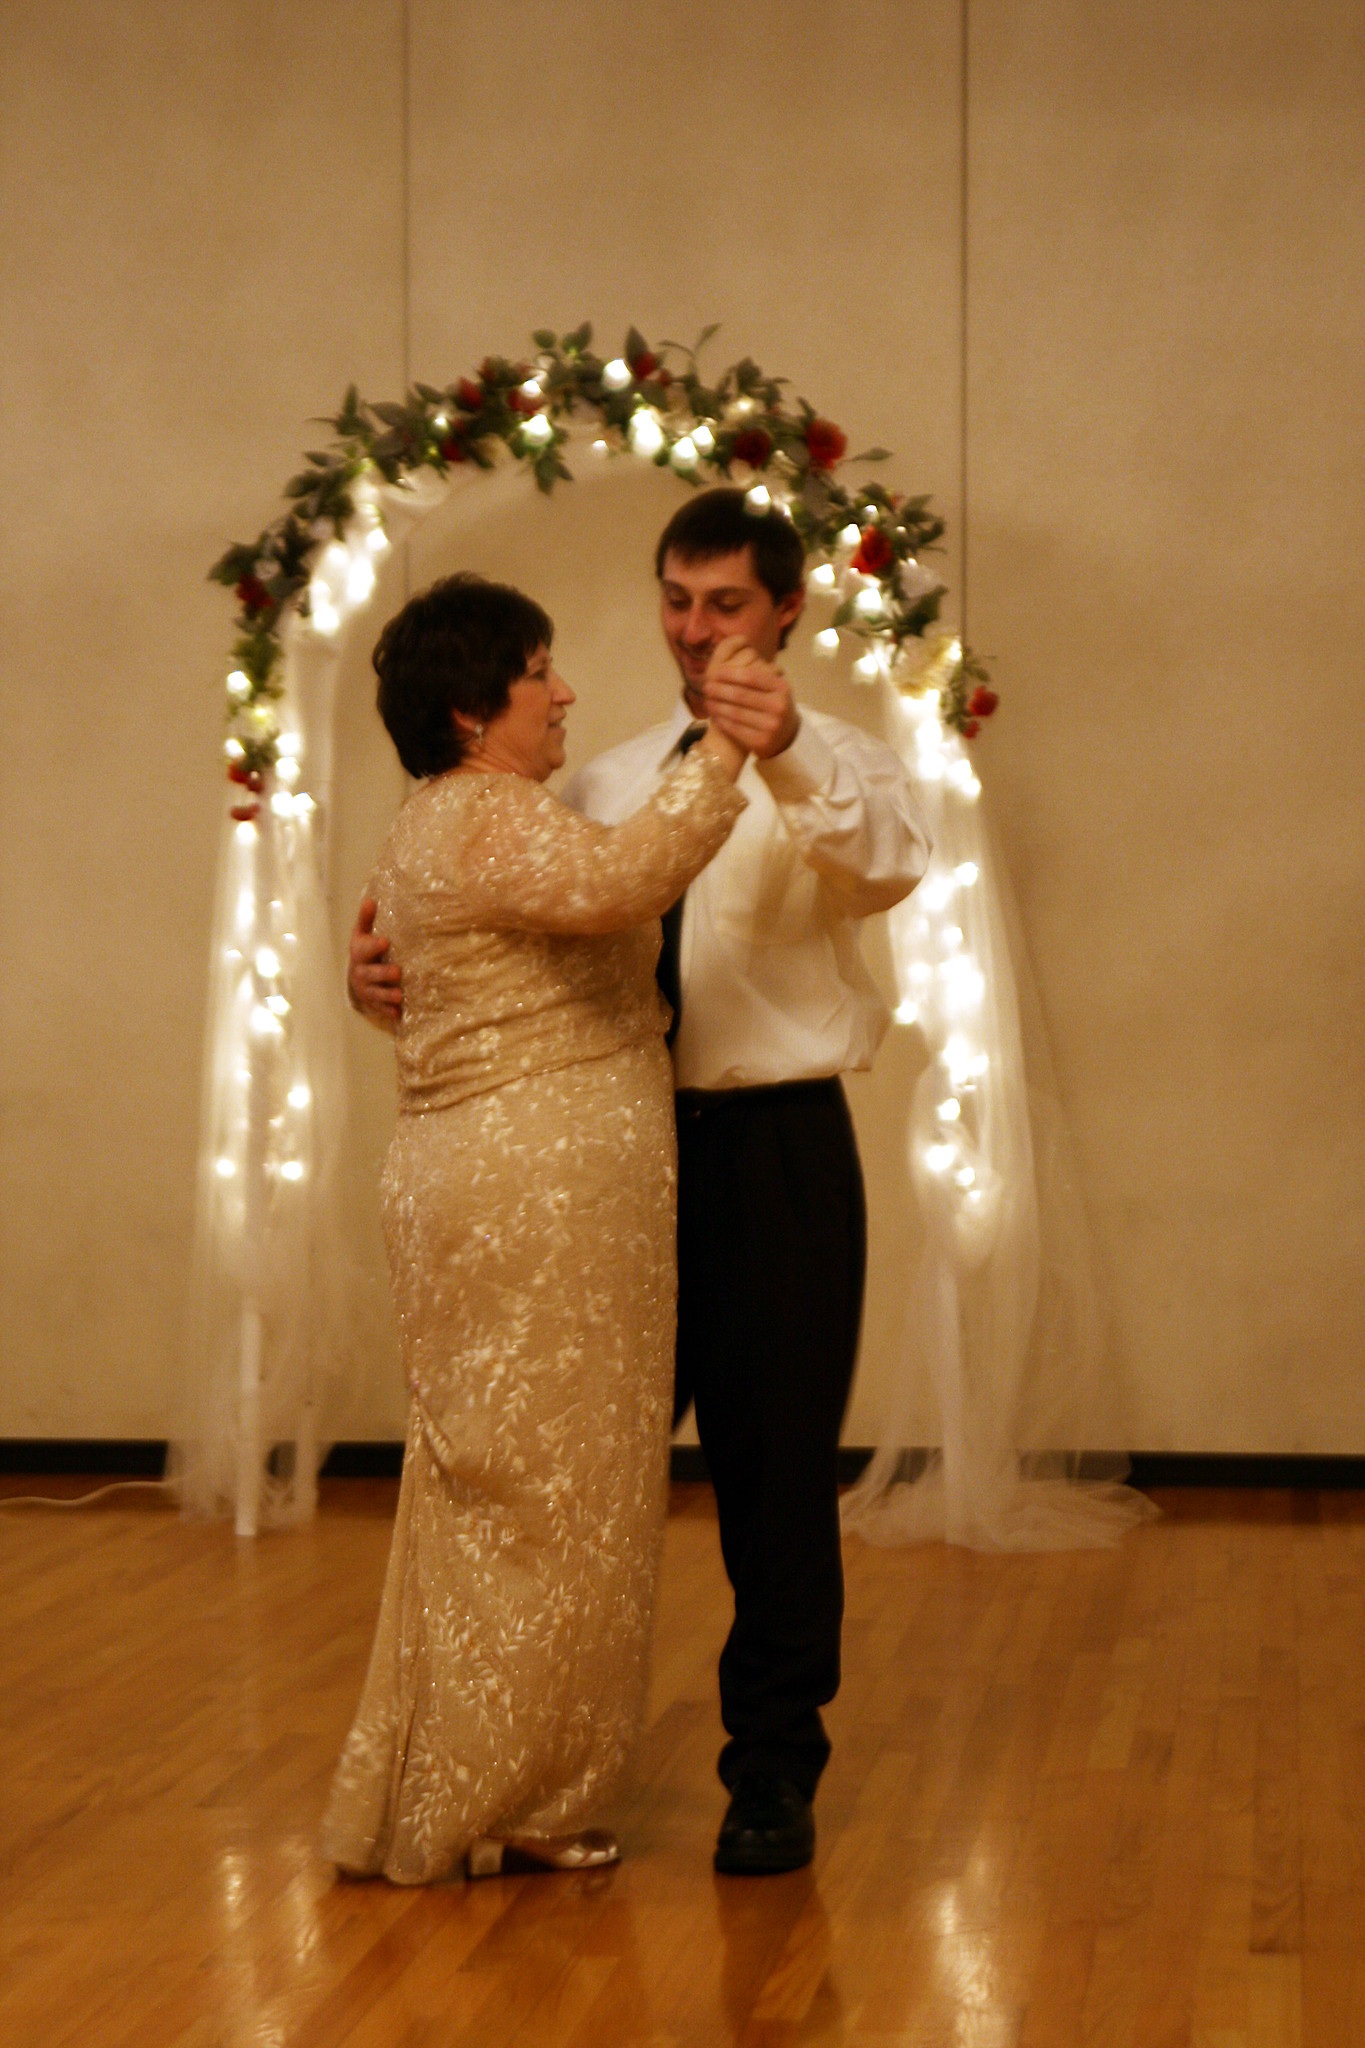 Un hijo compartiendo un baile con su madre en su boda | Fuente: Flickr